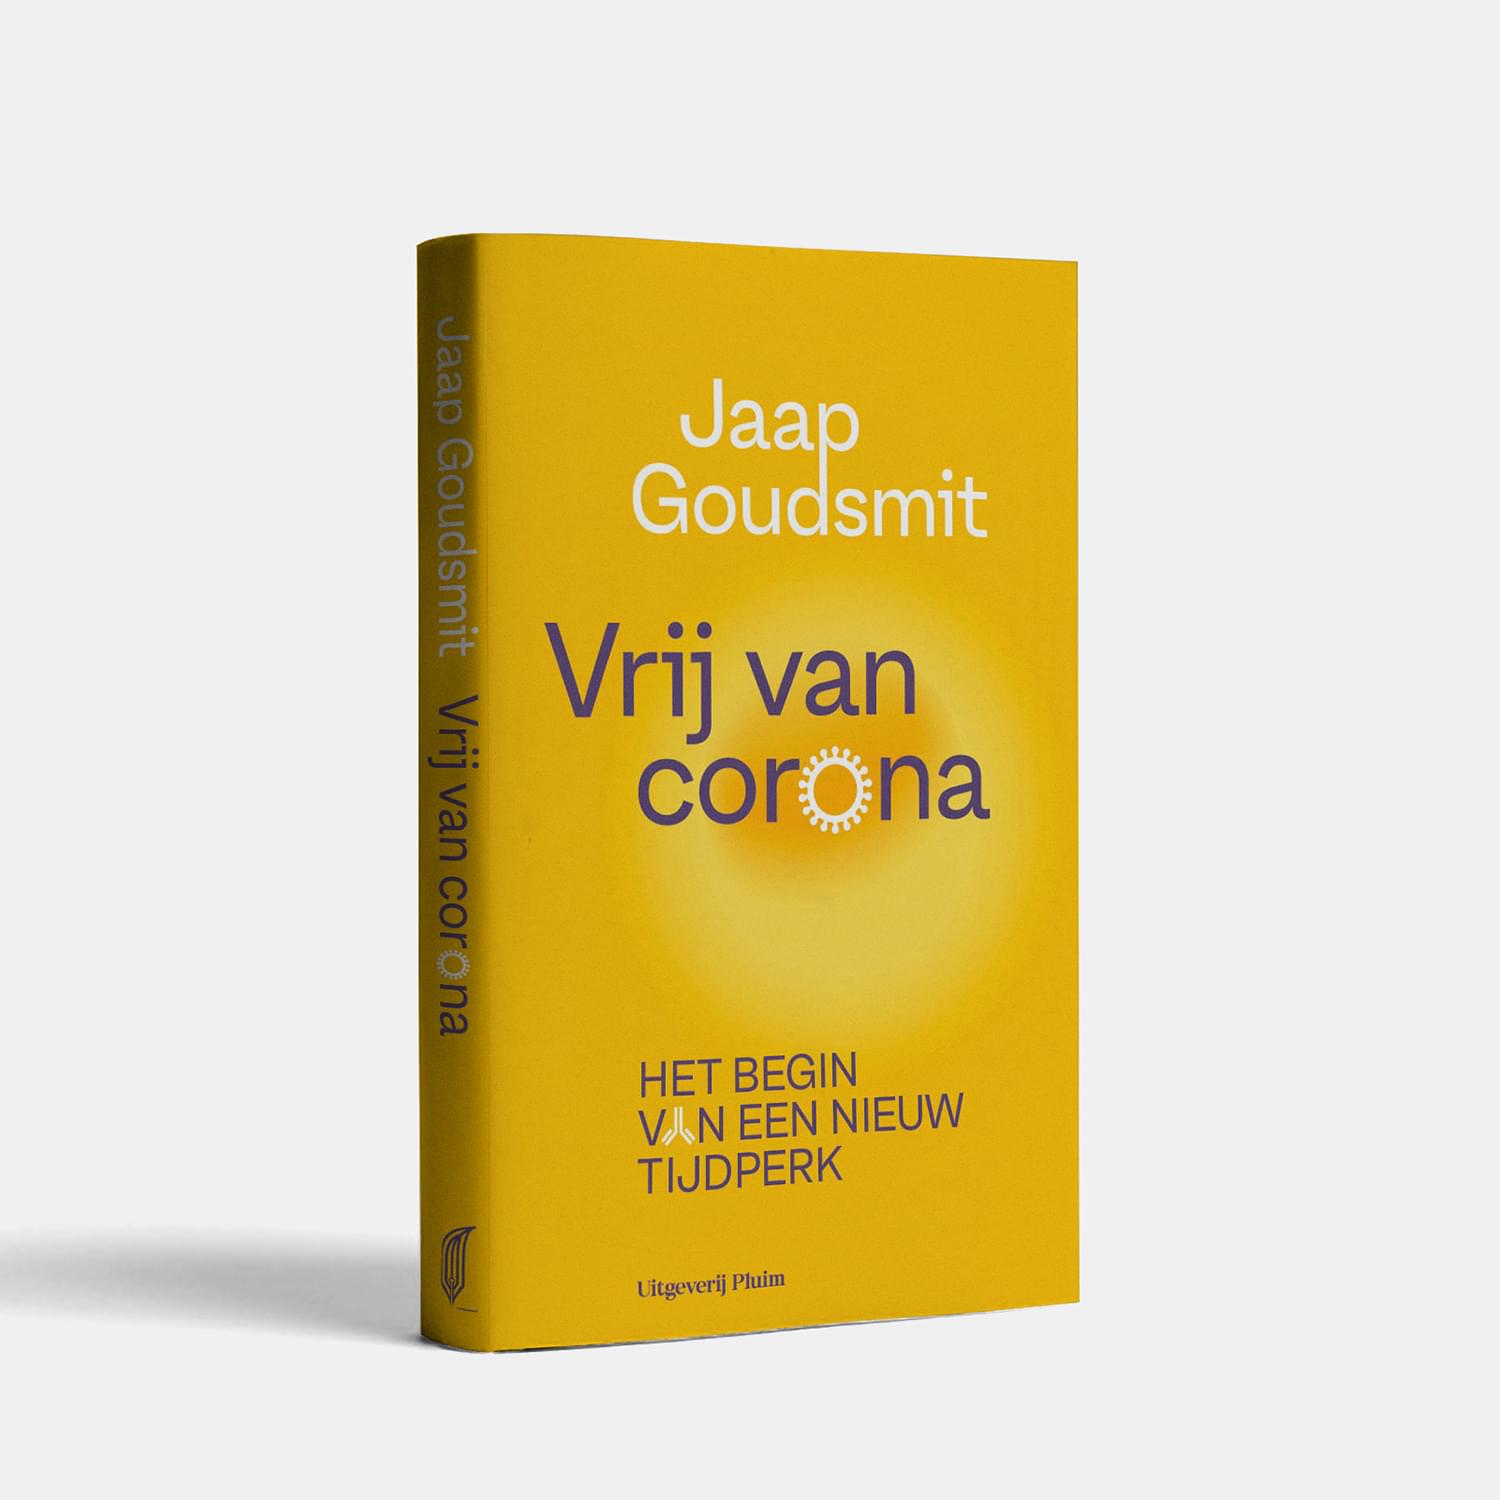 Jaap Goudsmit's nieuwste boek: Vrij van corona